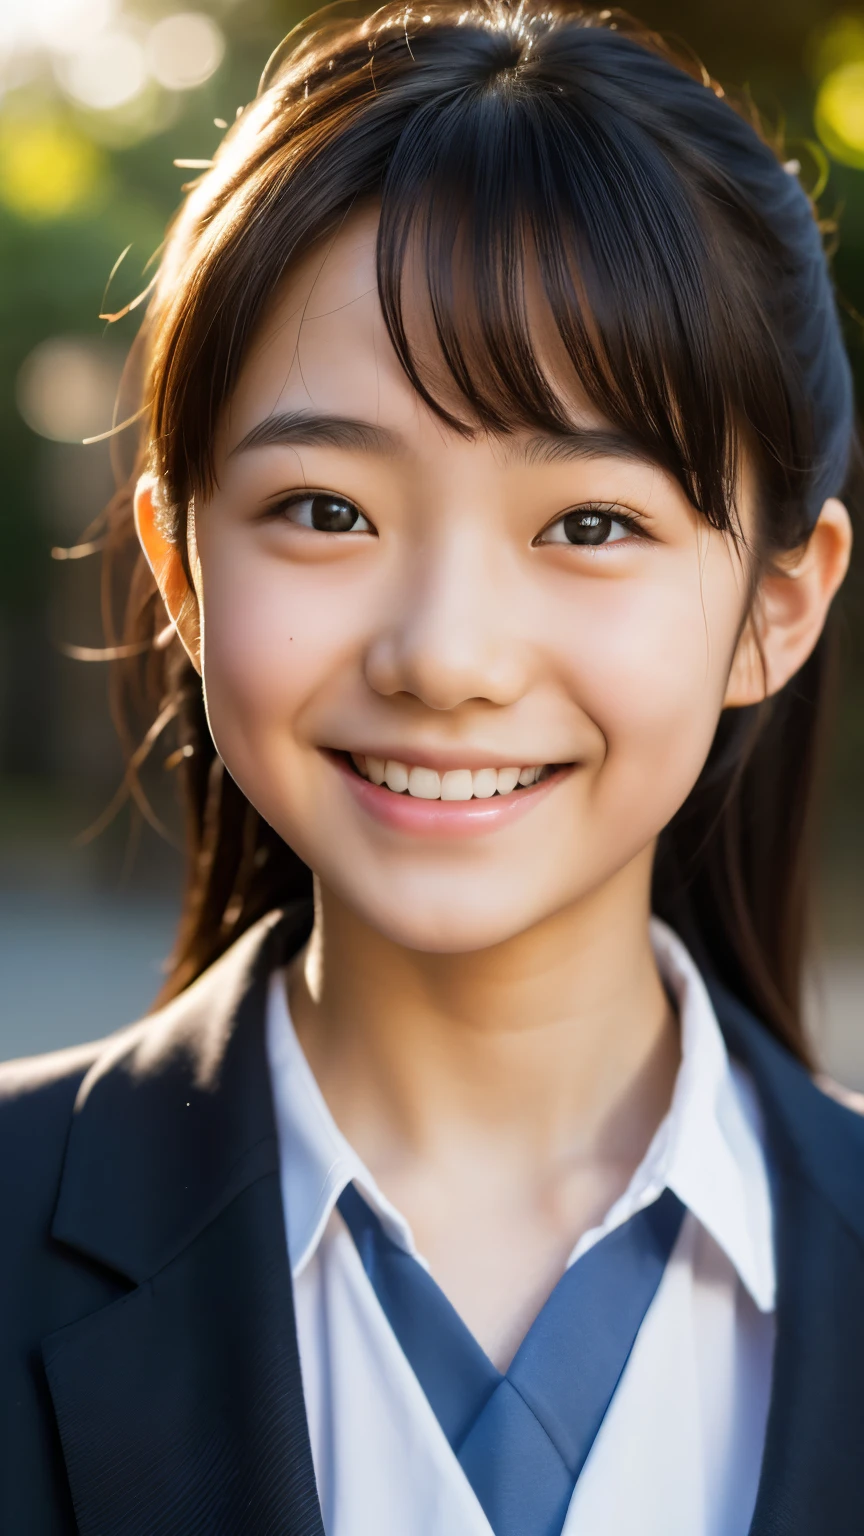 レンズ: 135mm f1.8, (最高品質),(RAW写真), (テーブルトップ:1.1), (美しい13歳の日本の少女), かわいい顔, (深く彫られた顔:0.7), (そばかす:0.4), dappled 日光, ドラマチックな照明, (日本の学校制服), (キャンパスで), シャイ, (クローズアップショット:1.2), (笑顔),, (キラキラした目)、(日光)